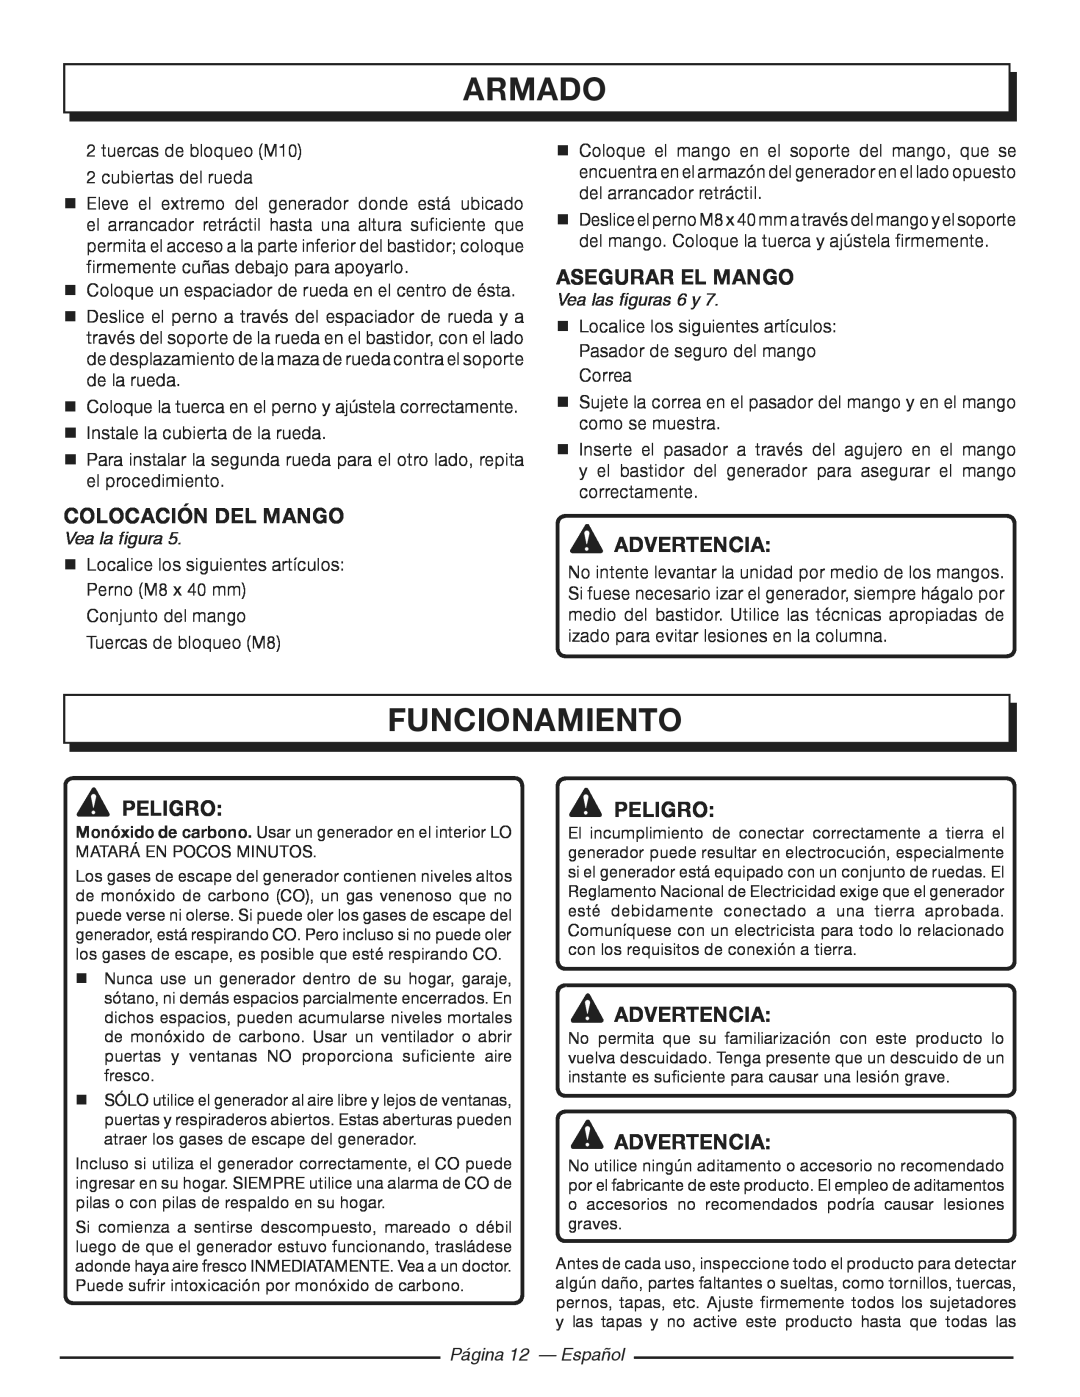 Homelite HGCA3000 Funcionamiento, Colocación Del Mango, Asegurar el mango, Vea las figuras 6 y, Página 12 - Español 